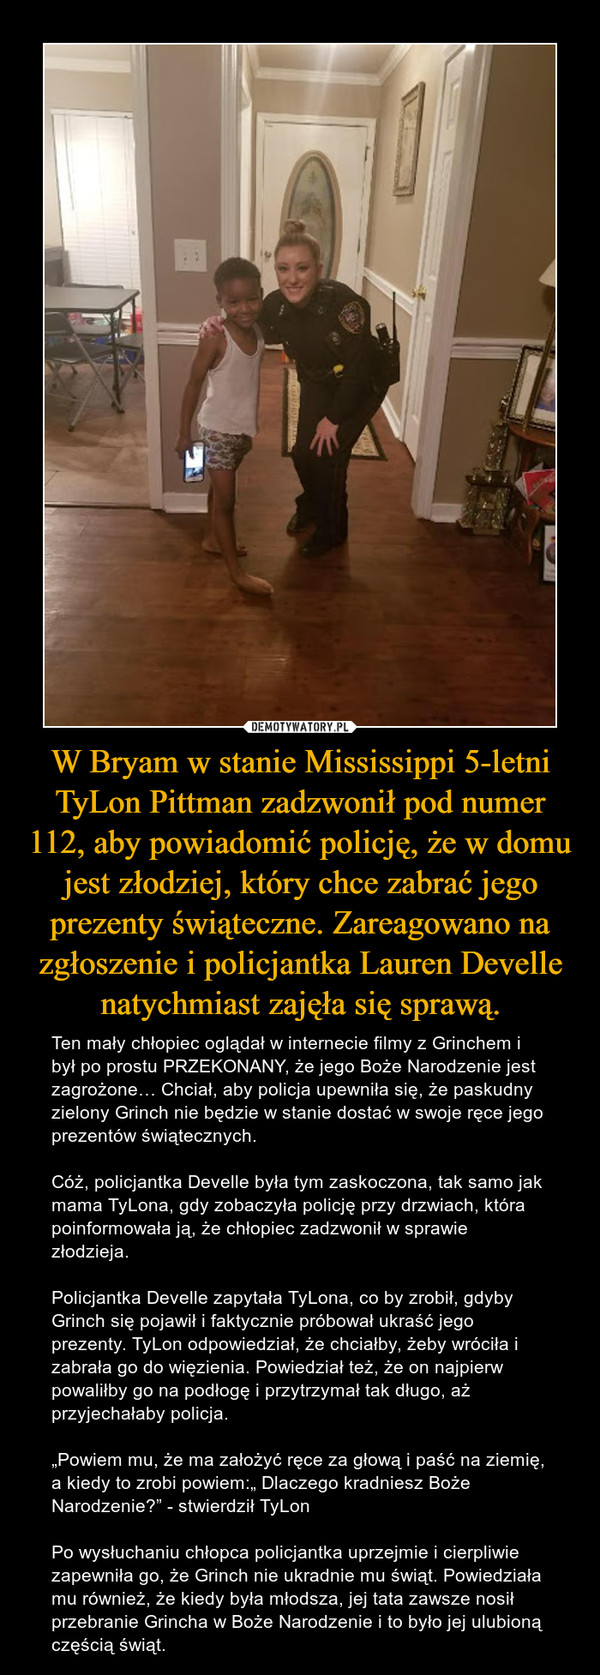 W Bryam w stanie Mississippi 5-letni TyLon Pittman zadzwonił pod numer 112, aby powiadomić policję, że w domu jest złodziej, który chce zabrać jego prezenty świąteczne. Zareagowano na zgłoszenie i policjantka Lauren Develle natychmiast zajęła się sprawą. – Ten mały chłopiec oglądał w internecie filmy z Grinchem i był po prostu PRZEKONANY, że jego Boże Narodzenie jest zagrożone… Chciał, aby policja upewniła się, że paskudny zielony Grinch nie będzie w stanie dostać w swoje ręce jego prezentów świątecznych.Cóż, policjantka Develle była tym zaskoczona, tak samo jak mama TyLona, gdy zobaczyła policję przy drzwiach, która poinformowała ją, że chłopiec zadzwonił w sprawie złodzieja.Policjantka Develle zapytała TyLona, co by zrobił, gdyby Grinch się pojawił i faktycznie próbował ukraść jego prezenty. TyLon odpowiedział, że chciałby, żeby wróciła i zabrała go do więzienia. Powiedział też, że on najpierw powaliłby go na podłogę i przytrzymał tak długo, aż przyjechałaby policja.„Powiem mu, że ma założyć ręce za głową i paść na ziemię, a kiedy to zrobi powiem:„ Dlaczego kradniesz Boże Narodzenie?” - stwierdził TyLonPo wysłuchaniu chłopca policjantka uprzejmie i cierpliwie zapewniła go, że Grinch nie ukradnie mu świąt. Powiedziała mu również, że kiedy była młodsza, jej tata zawsze nosił przebranie Grincha w Boże Narodzenie i to było jej ulubioną częścią świąt. 